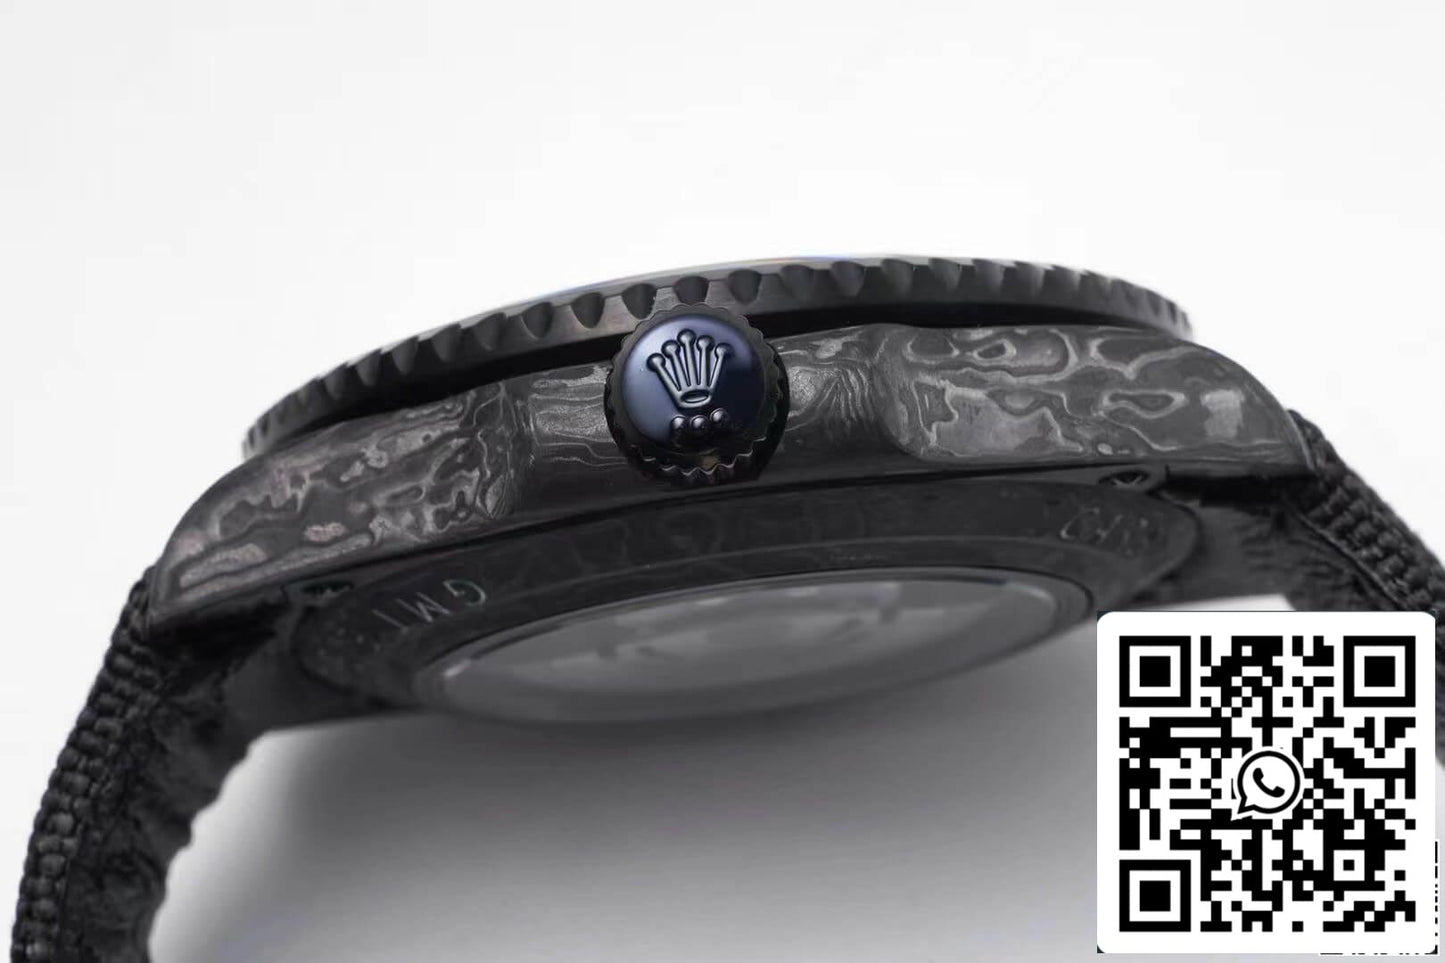 Rolex GMT-MASTER II Diw 1:1 Best Edition Armband aus schwarzem Kohlefasergewebe